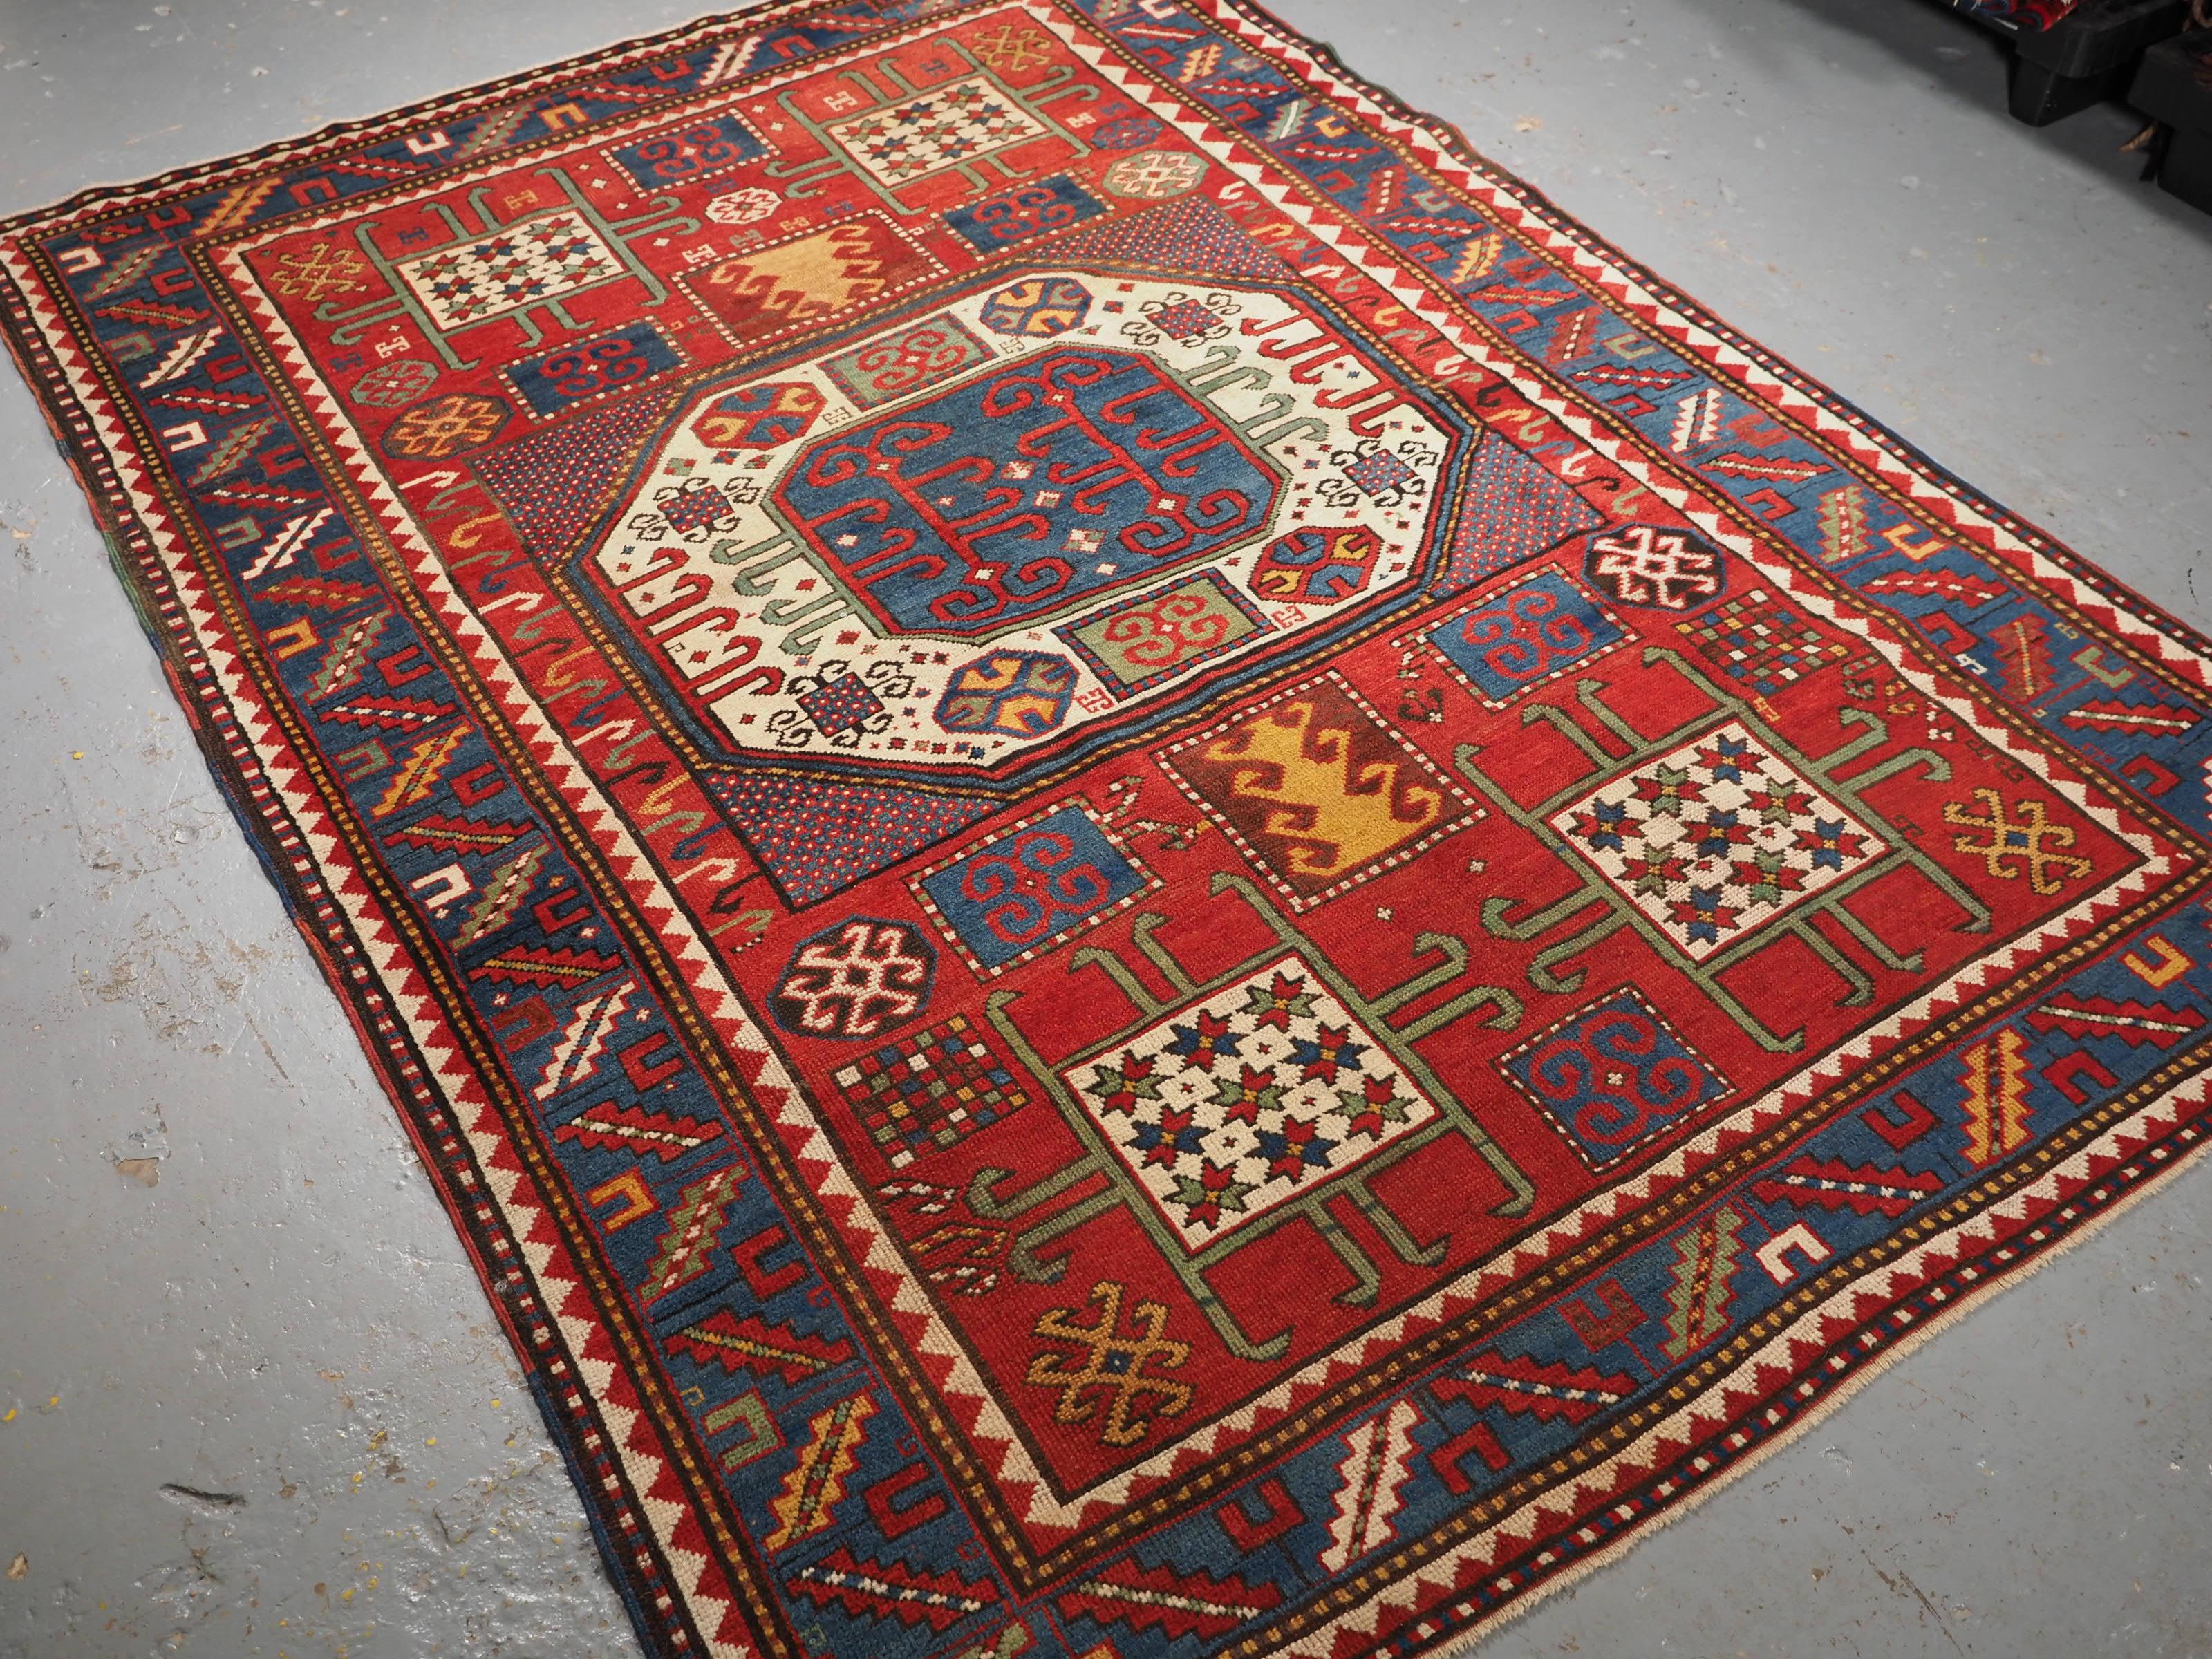 Ein gutes Beispiel für einen Karachov-Kazak-Teppich mit dem traditionellen großen achteckigen Medaillonmuster in der Mitte. Das zentrale Medaillon steht auf elfenbeinfarbenem Grund, die vier Ecken enthalten das Quadrat- und Sternmotiv und sind in